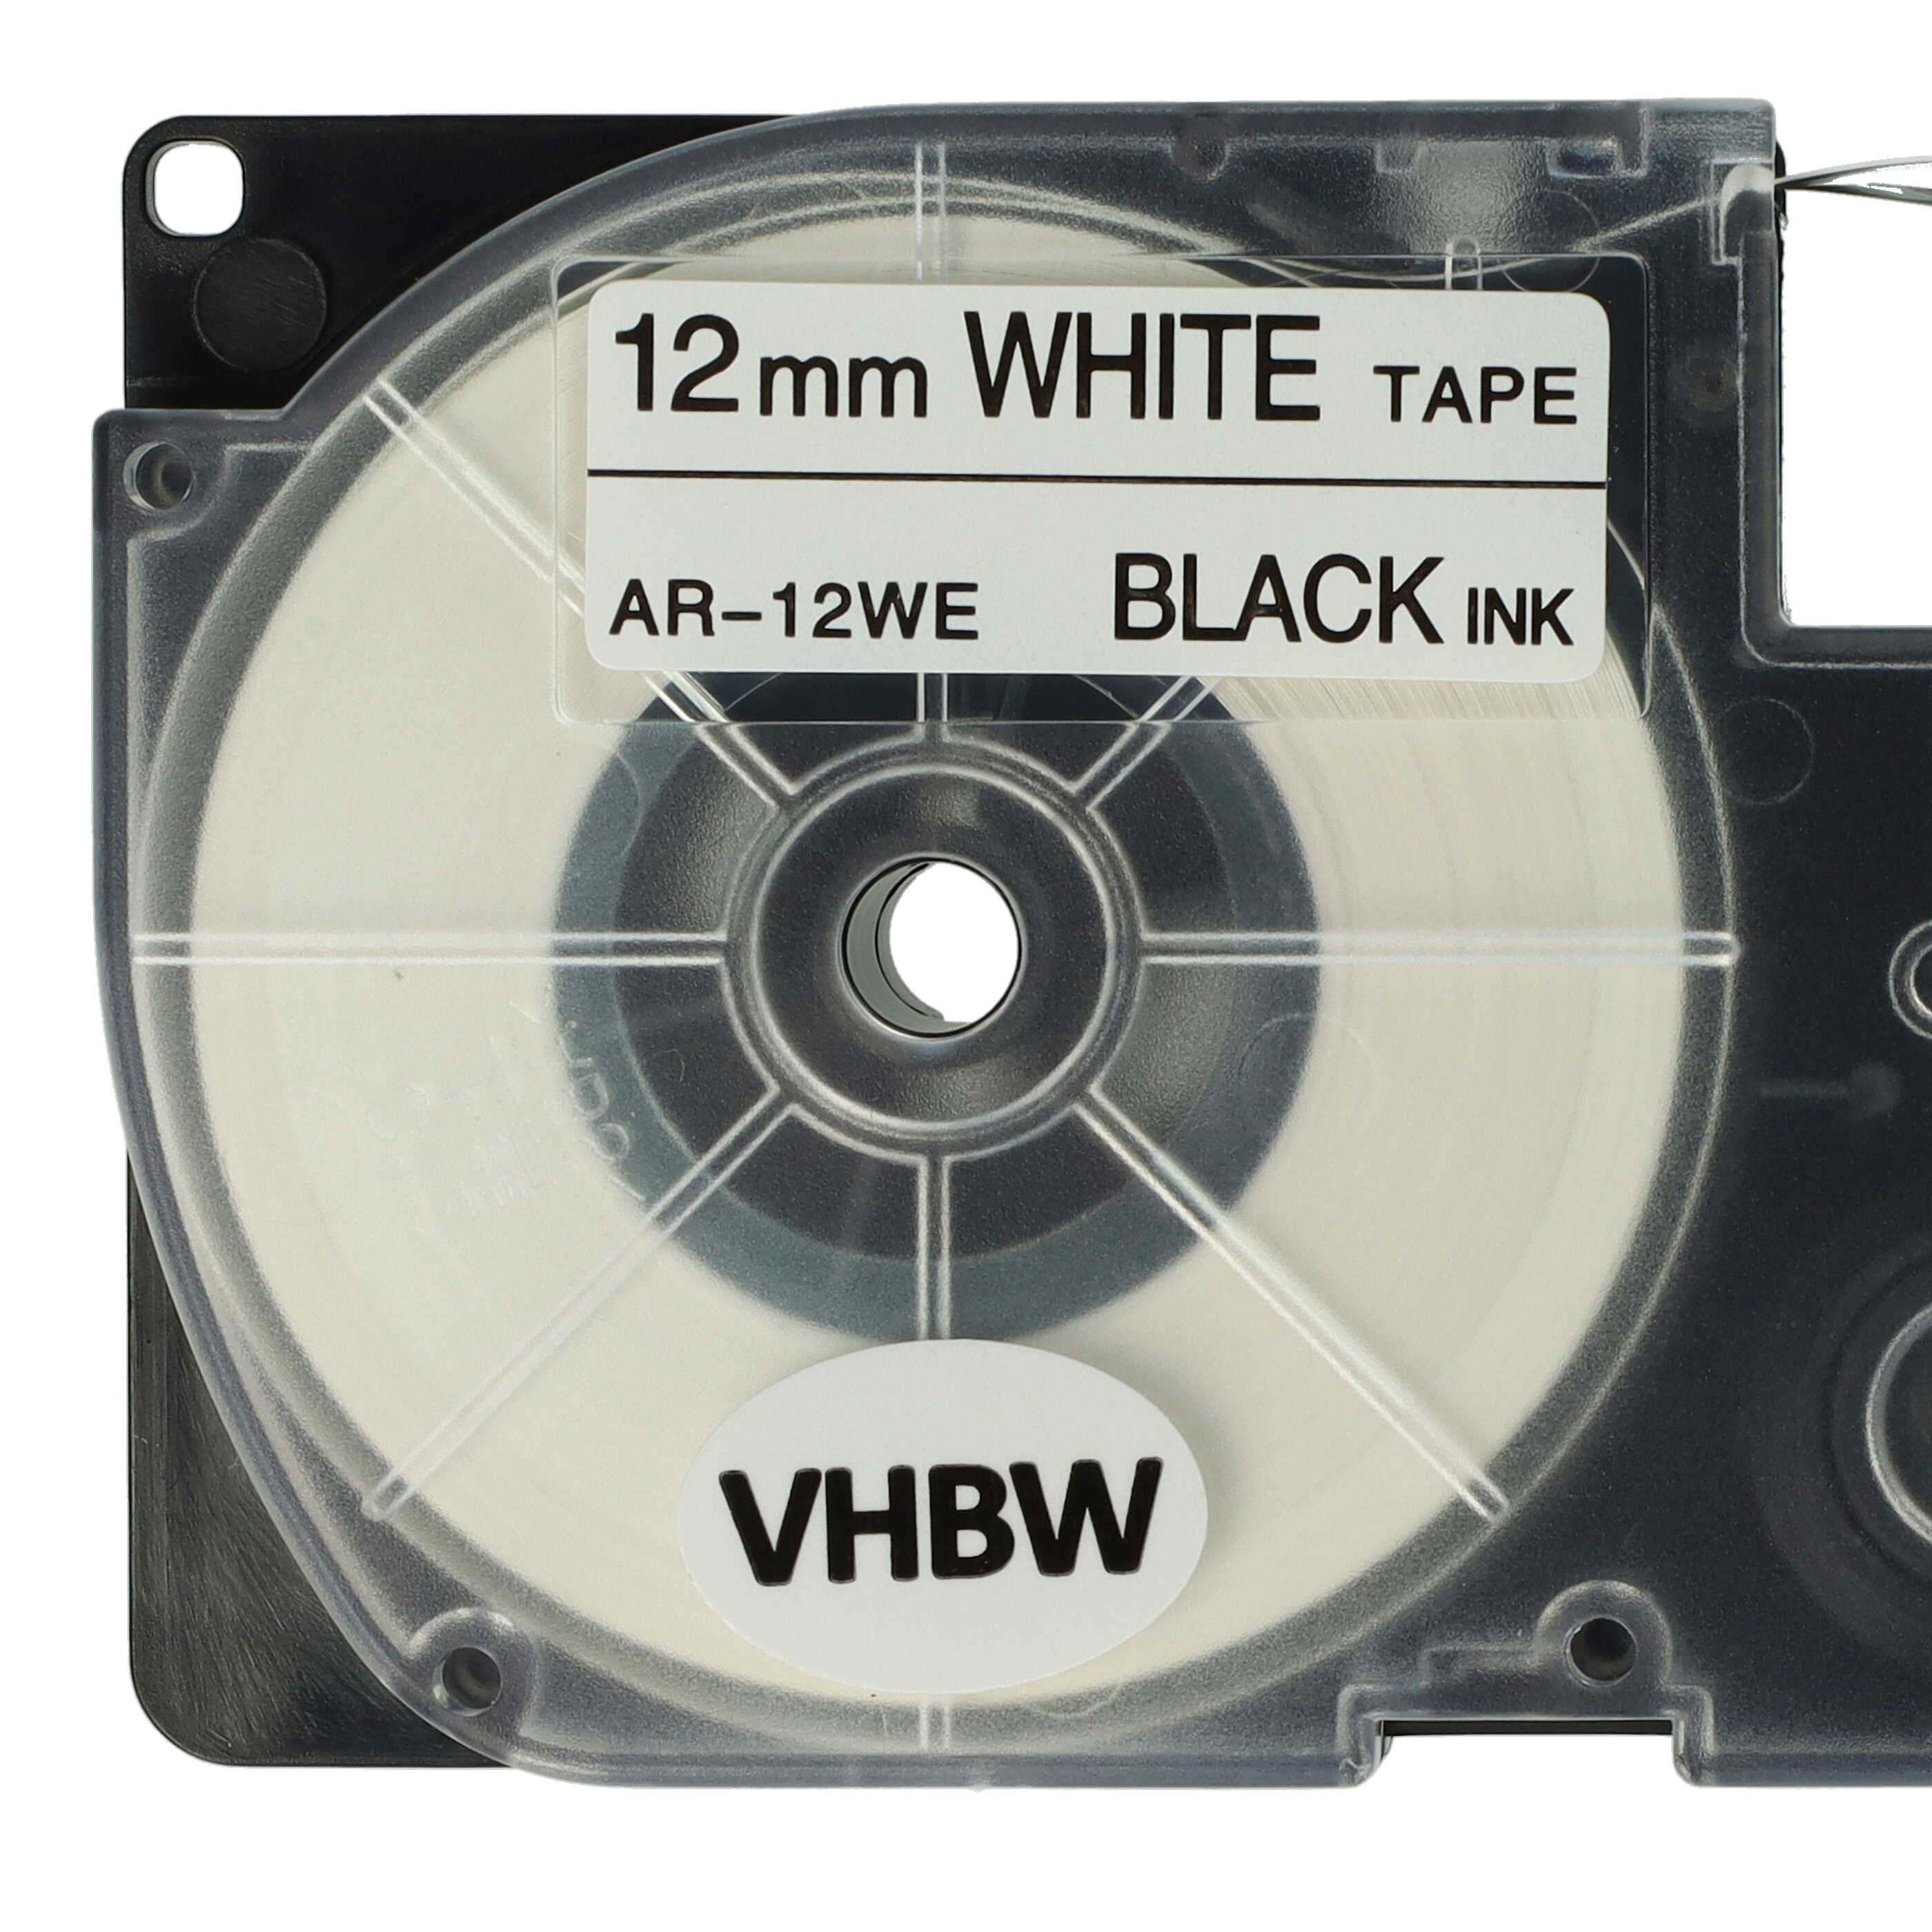 3x Schriftband als Ersatz für Casio XR-12WE, XR-12WE1 - 12mm Schwarz auf Weiß